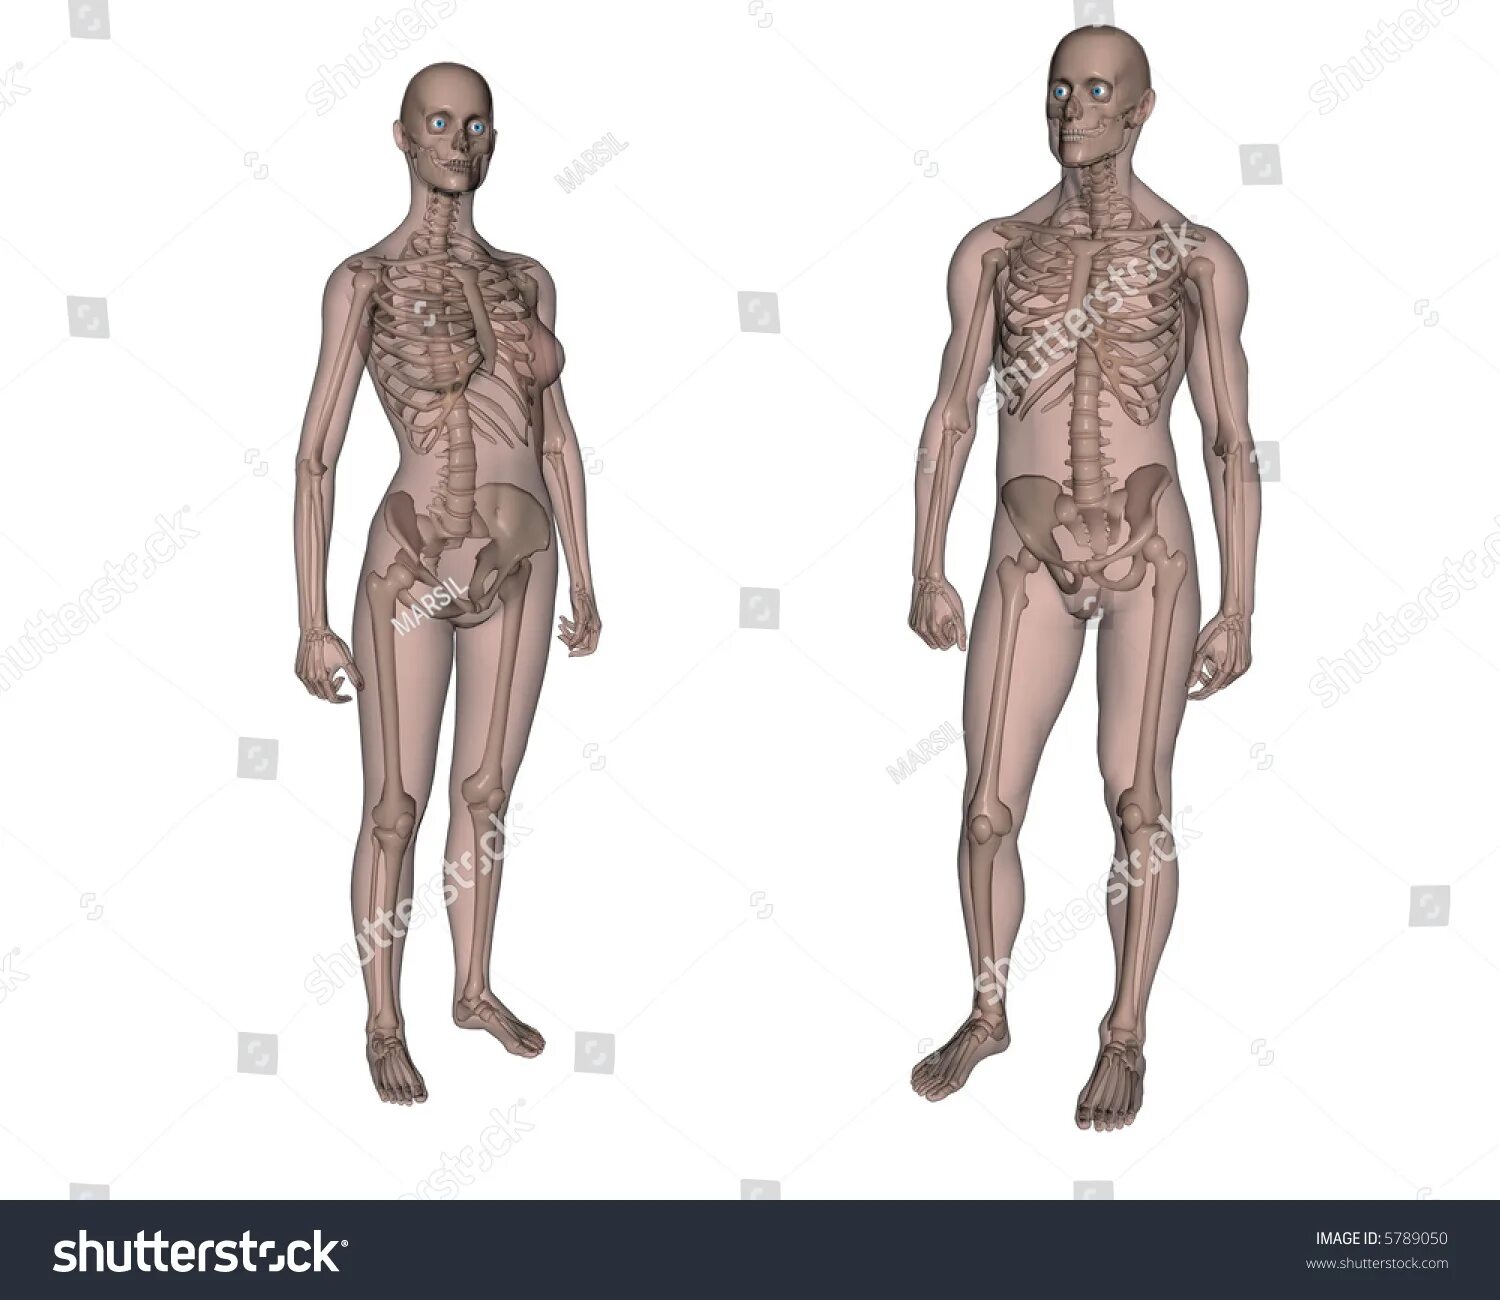 Половые различия мужчин. Скелет мужчины. Скелет мужчины и женщины. Скелет мужчины и скелет женщины. Анатомия мужчины и женщины.